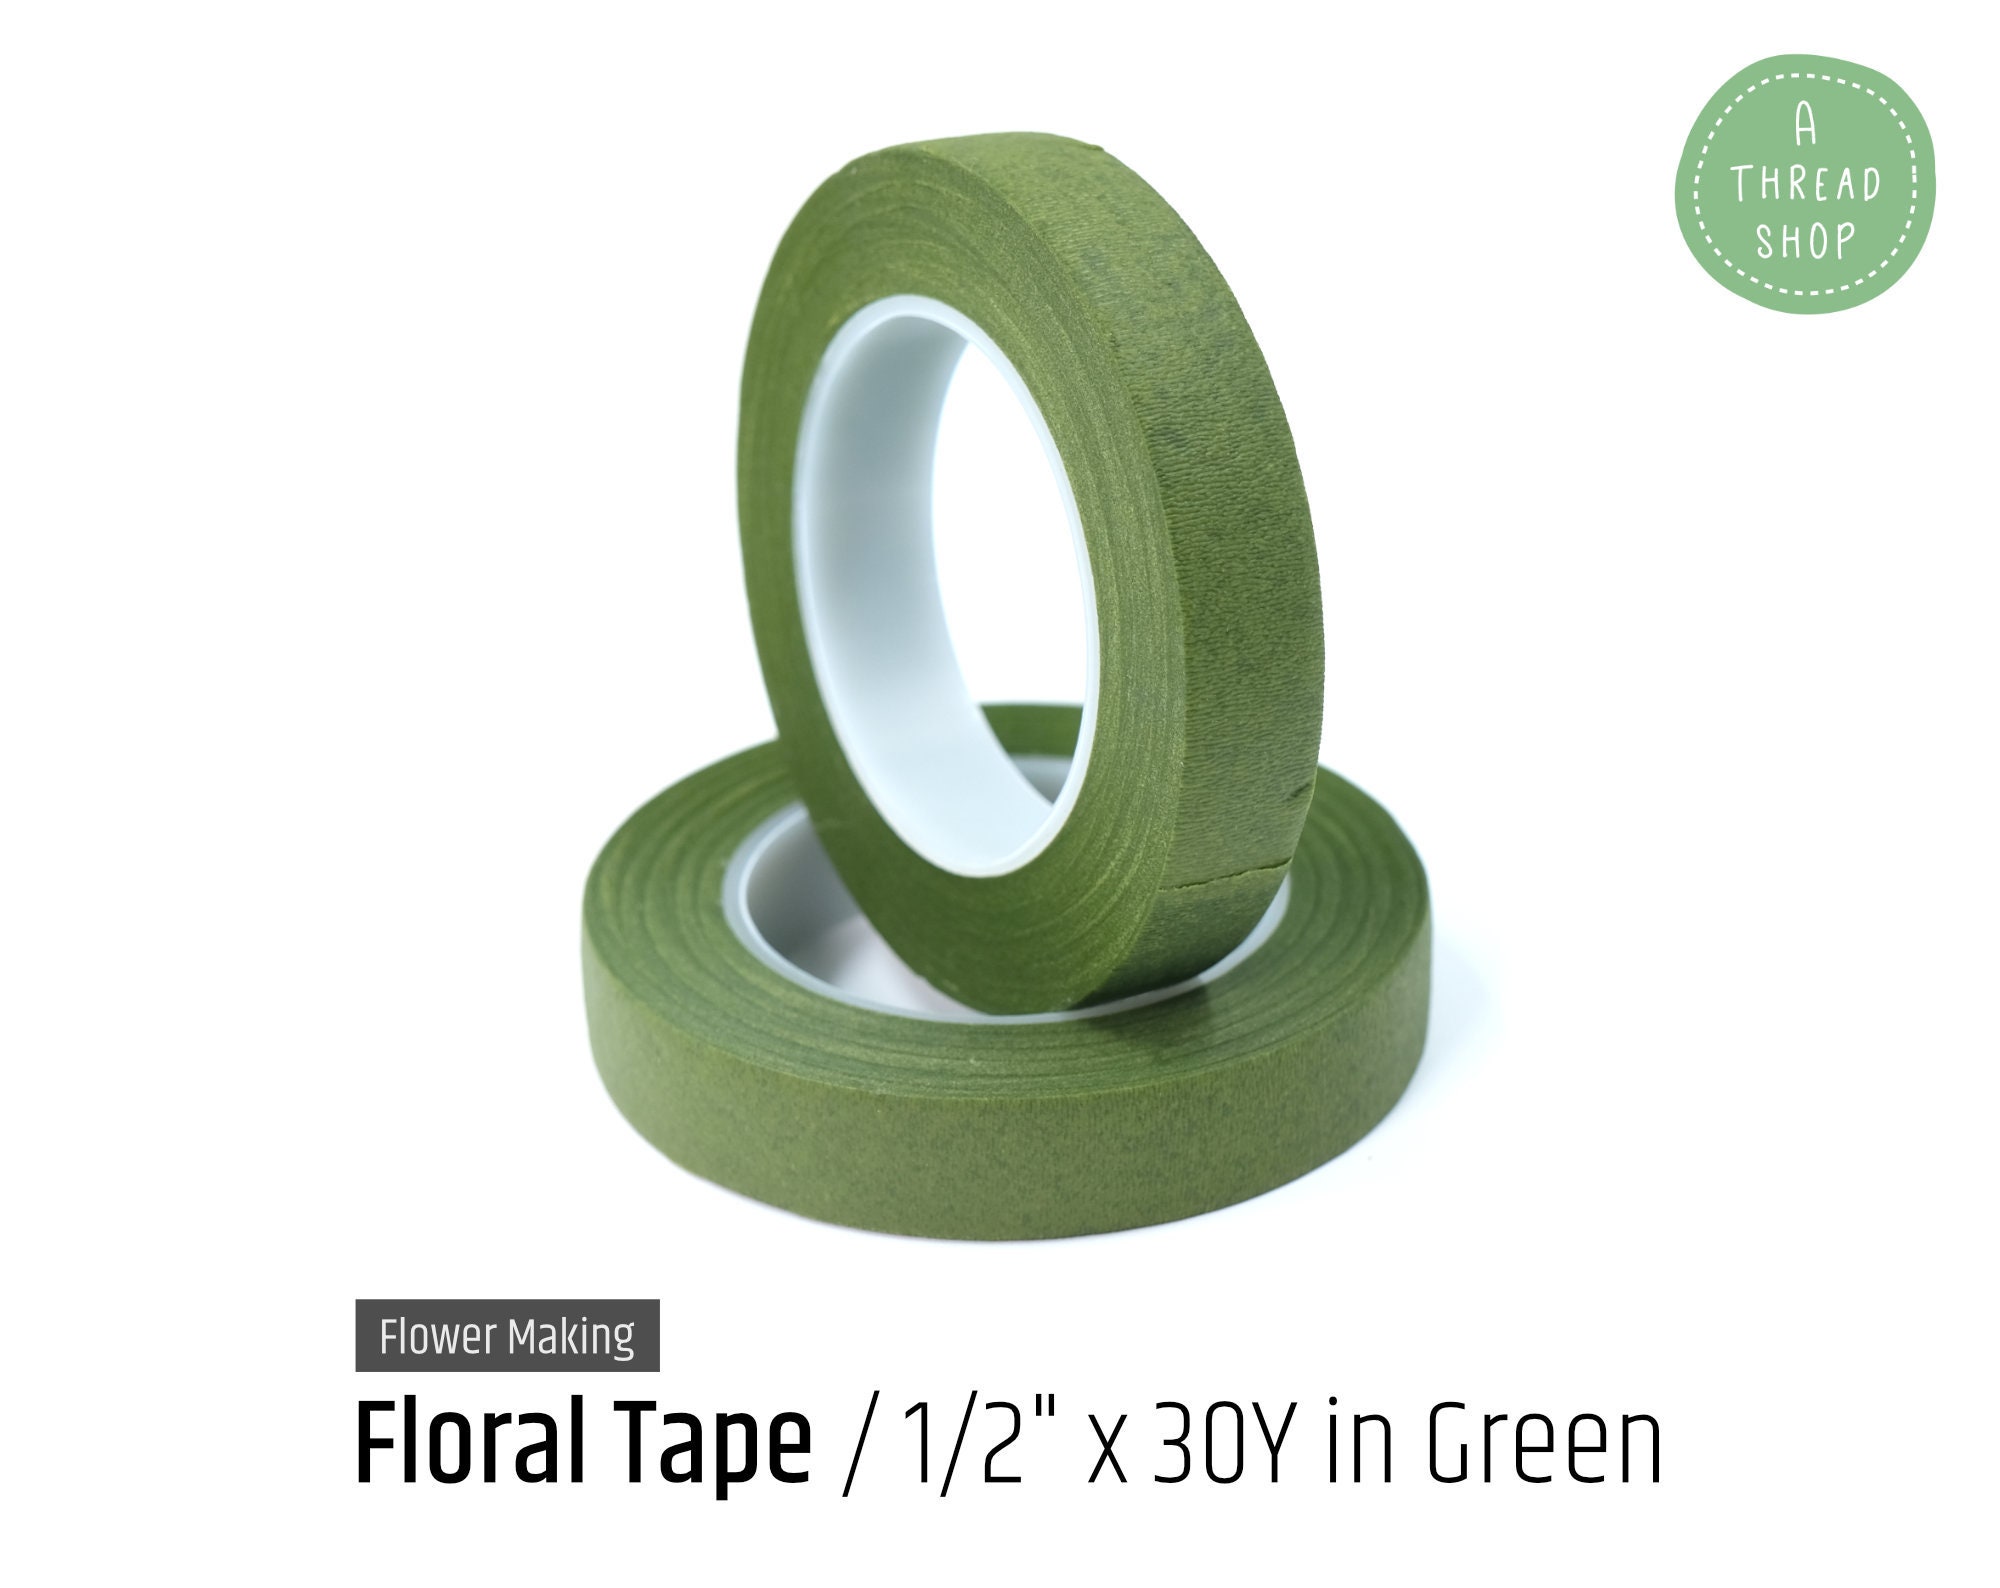 1/2 Oasis Waterproof Floral Tape - Green